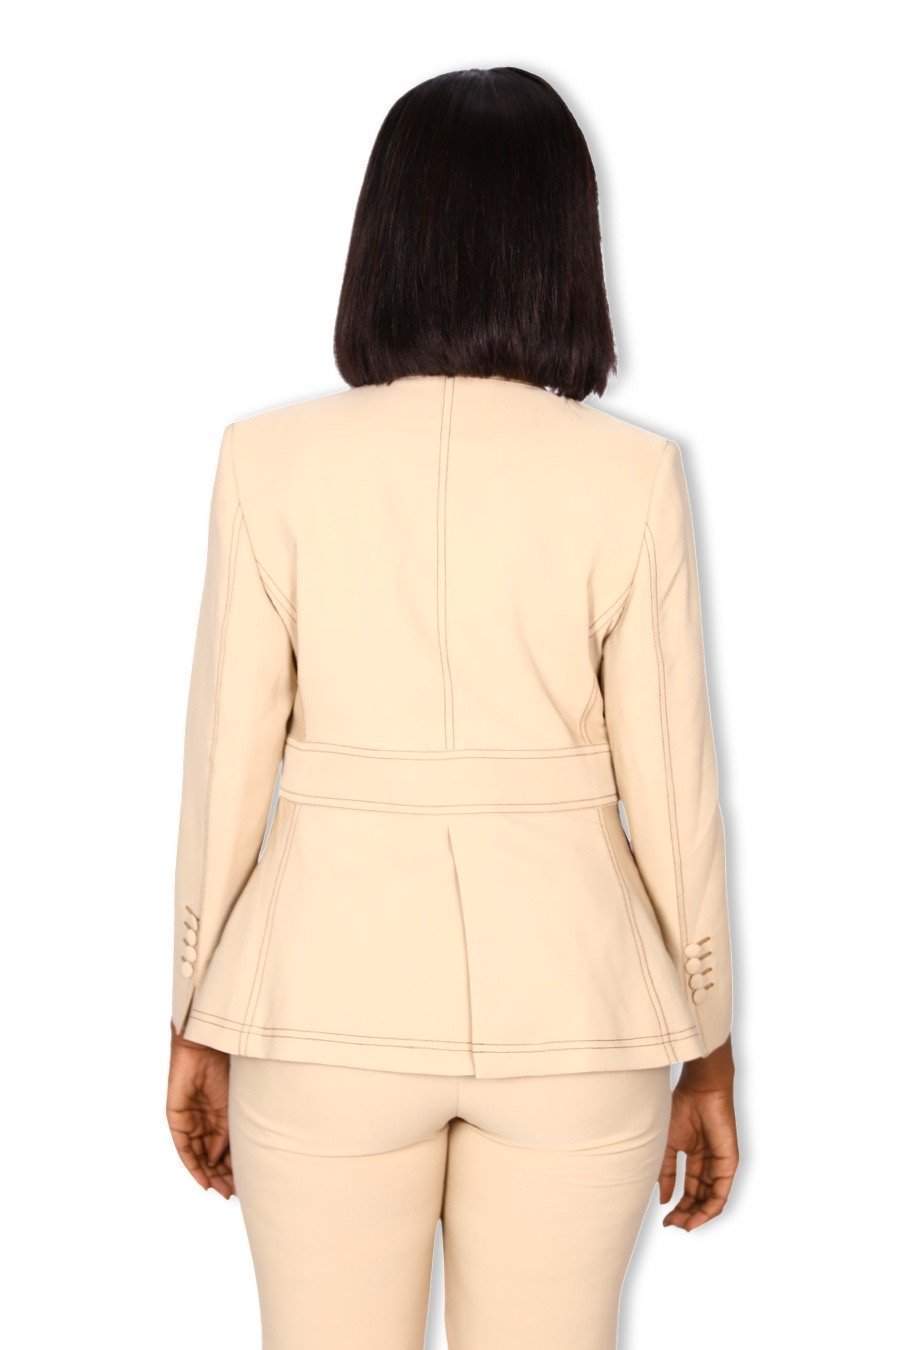 Beige Plain Office Suit-danddclothing-AFRICAN WEAR FOR WOMEN,Jackets,Pink,Women Jackets